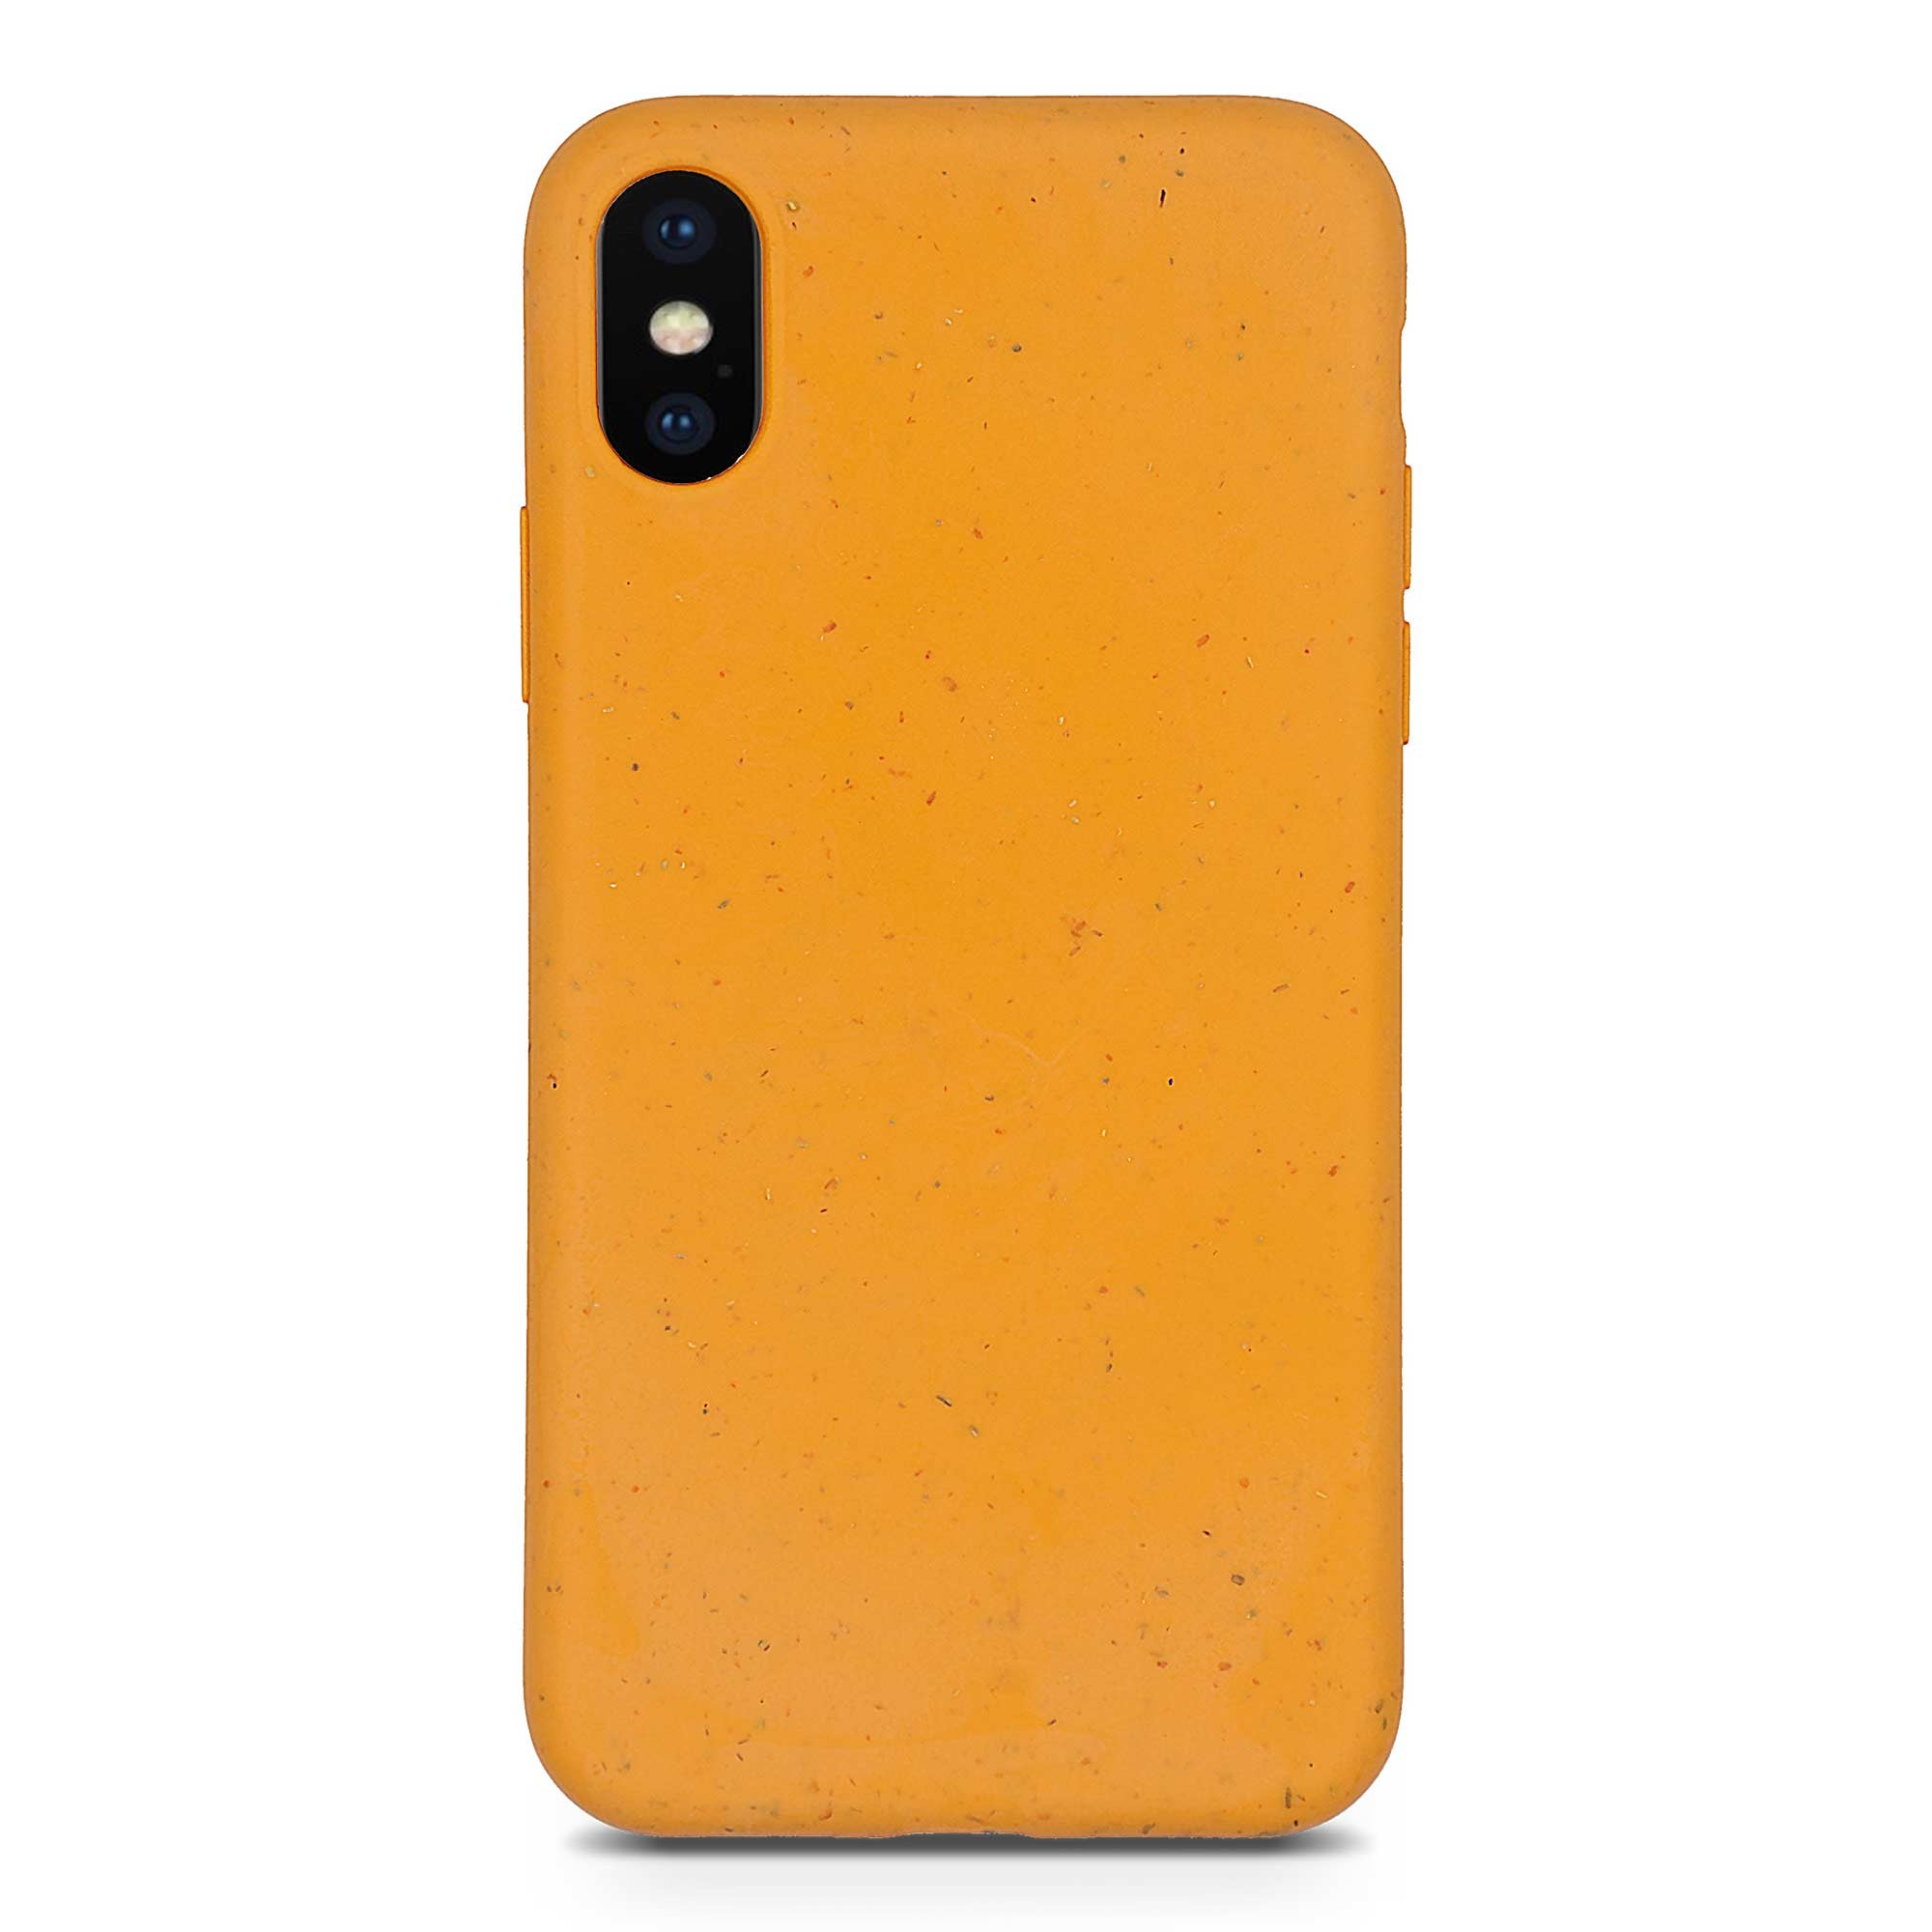 Funda para teléfono naranja biodegradable para iPhone XS